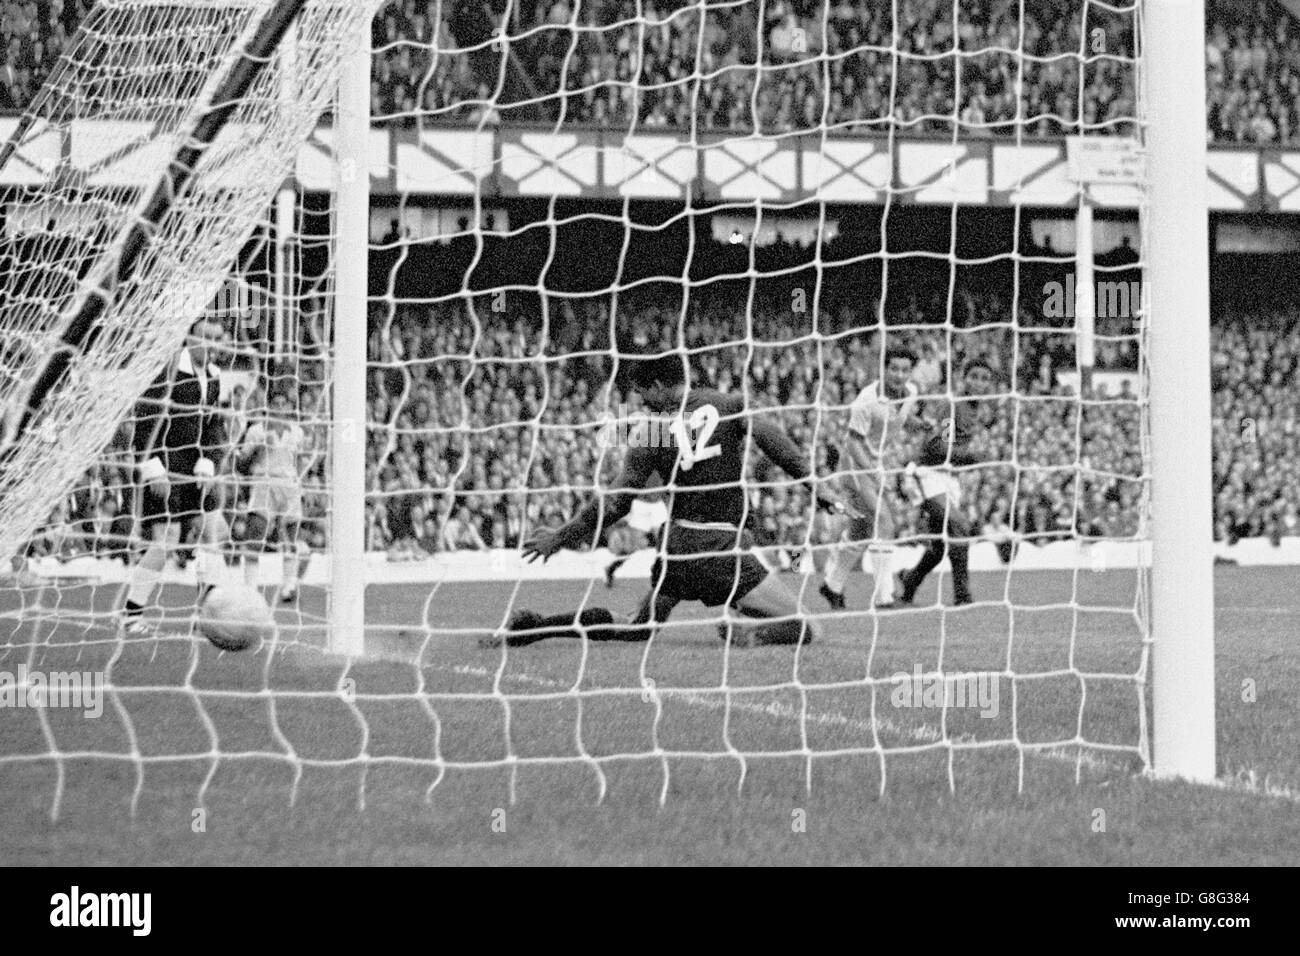 Calcio - Coppa del mondo Inghilterra 1966 - Gruppo tre - Portogallo / Brasile - Goodison Park. Eusebio (r) del Portogallo guarda come il suo colpo batte il portiere brasiliano Manga (c) per il terzo obiettivo della sua squadra Foto Stock